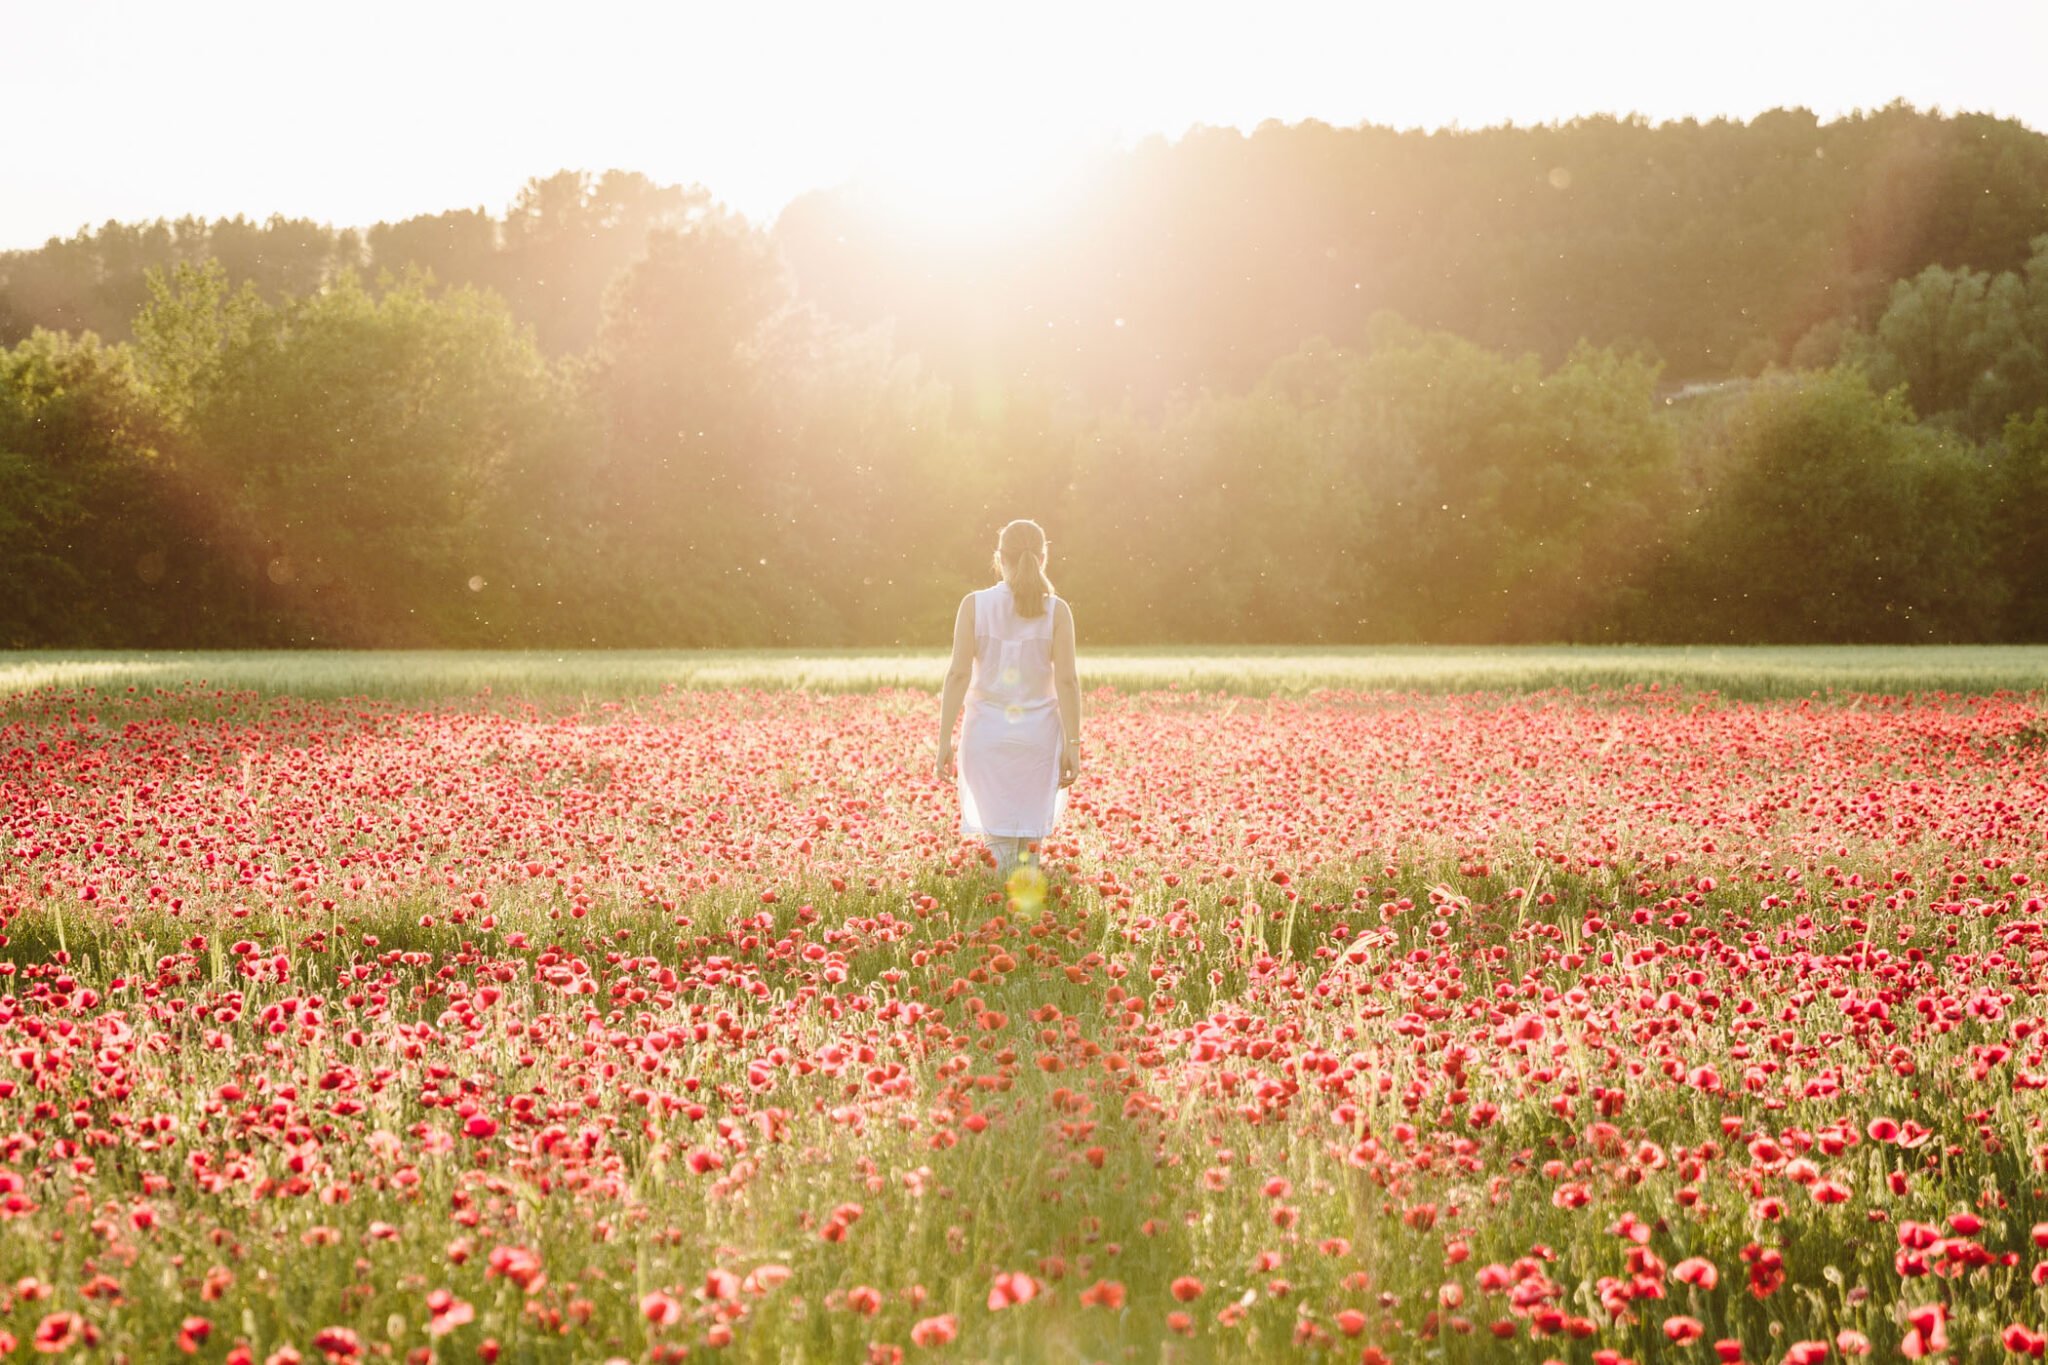 Standing in a poppy field in summer